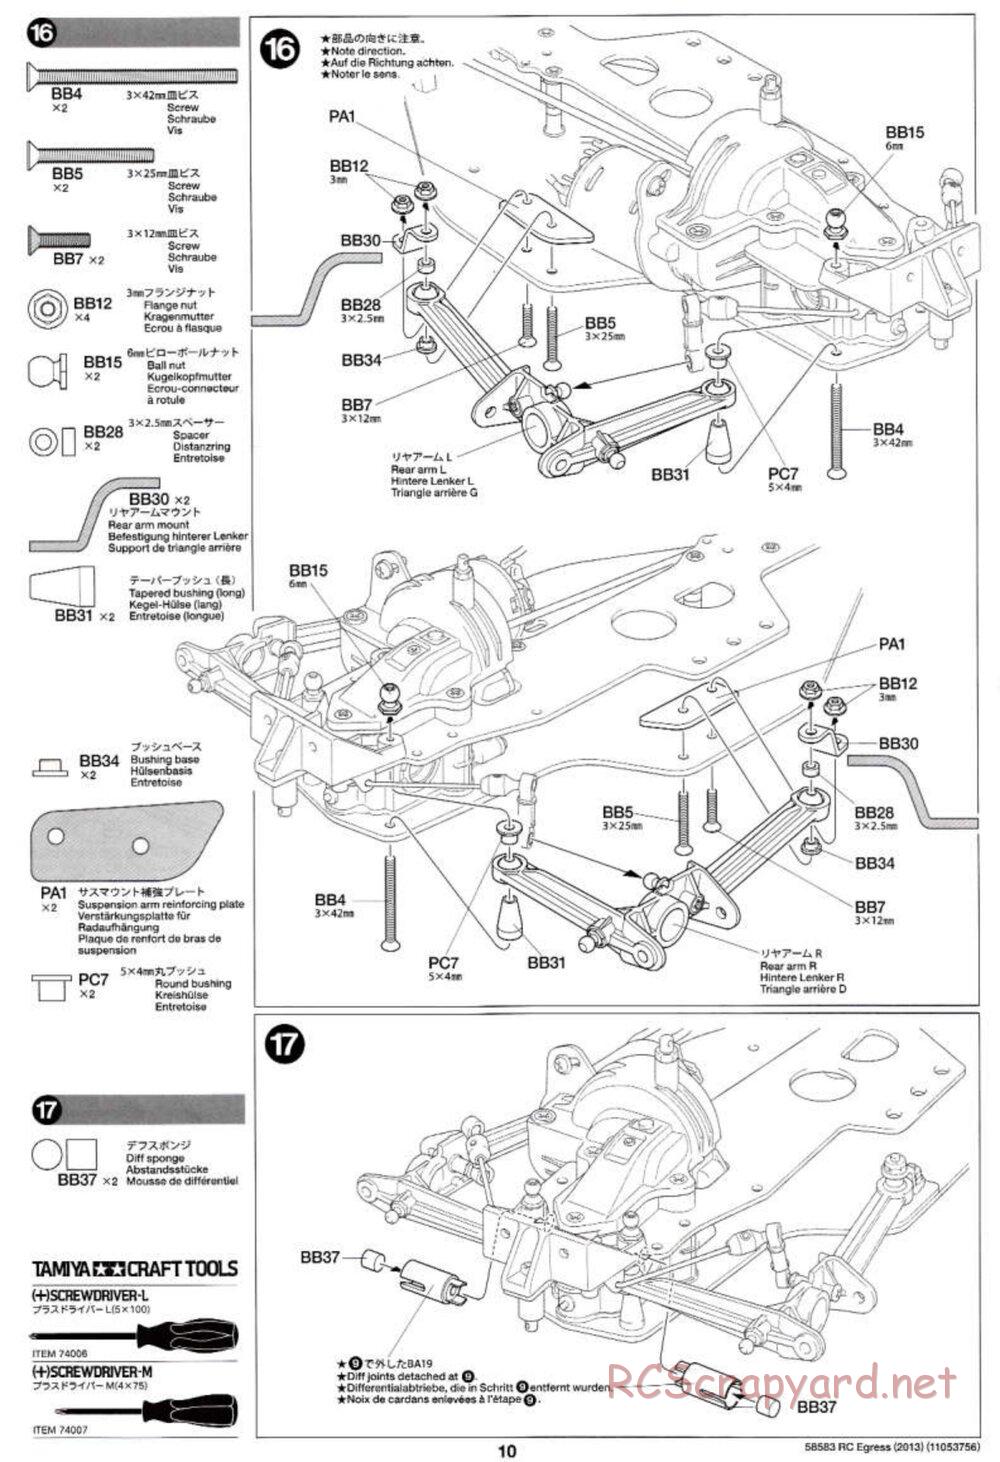 Tamiya - Egress 2013 - AV Chassis - Manual - Page 10